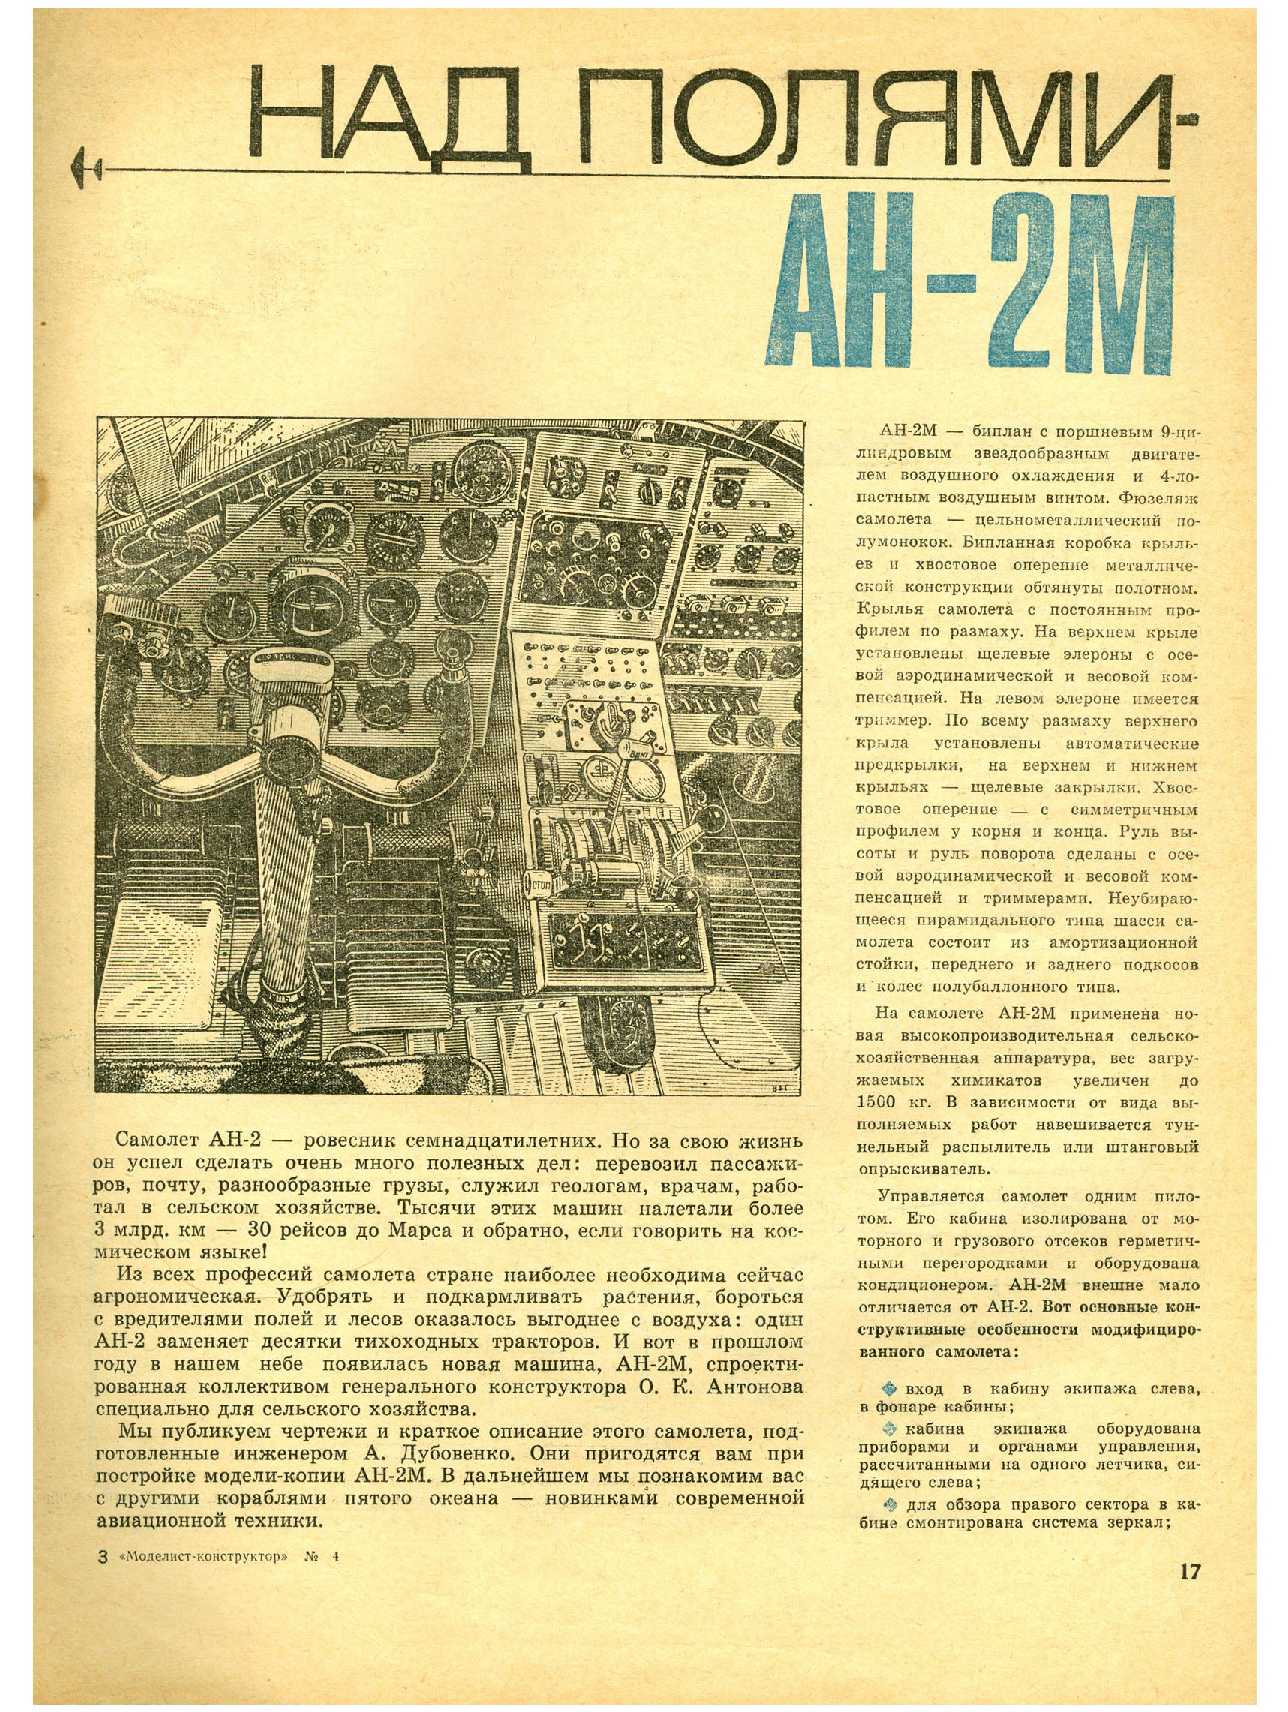 МК 4, 1966, 17 c.